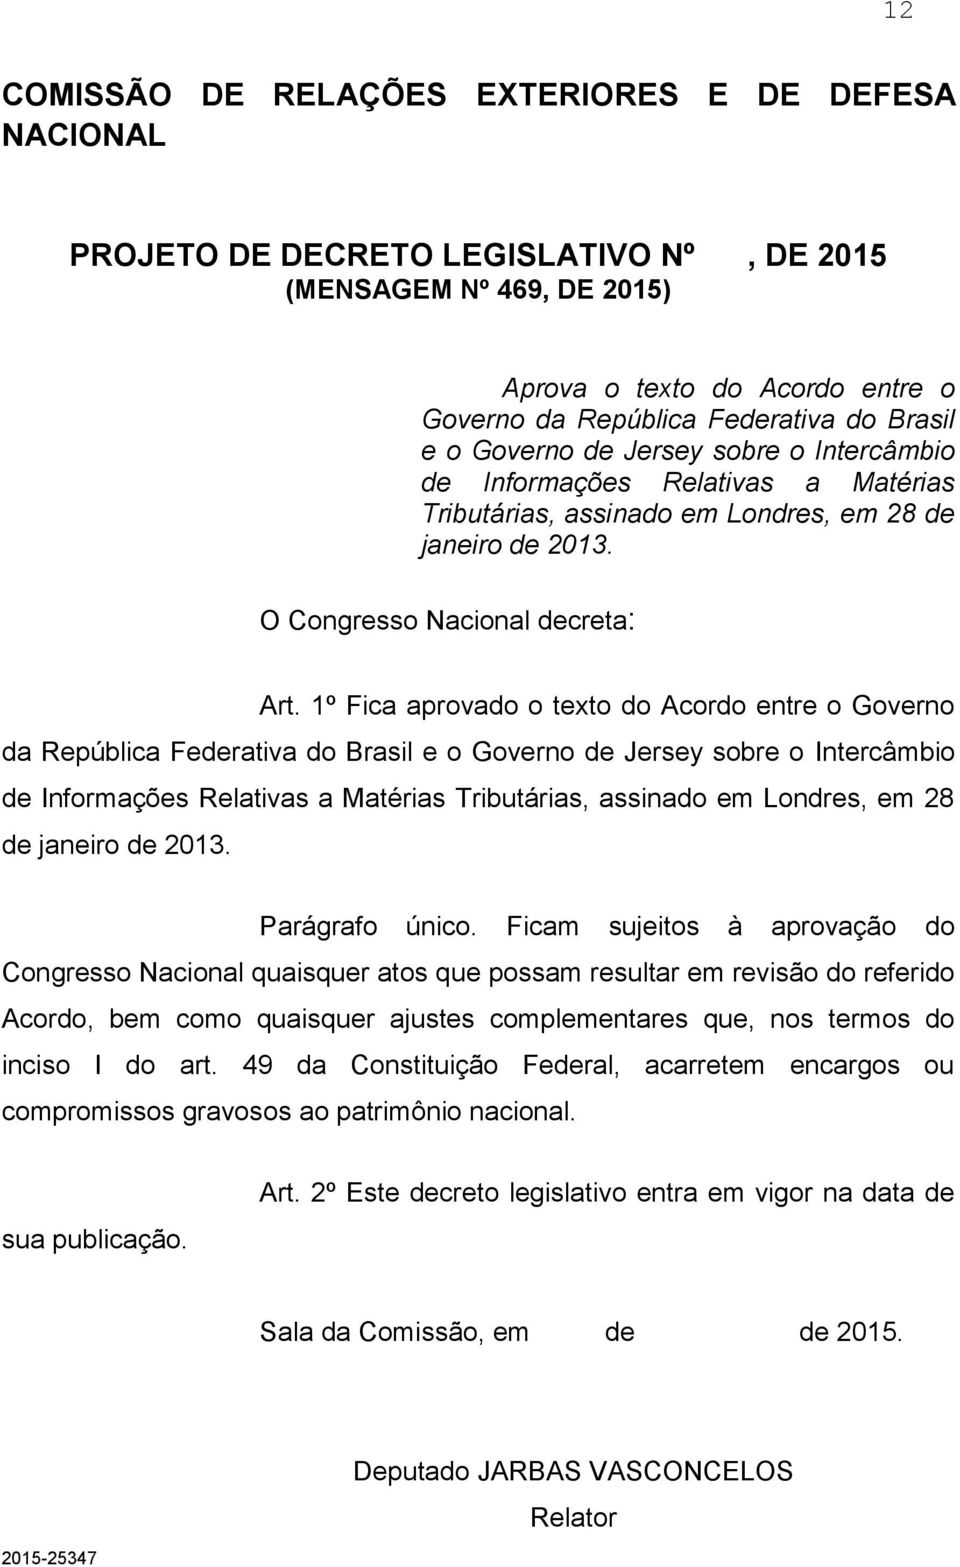 1º Fica aprovado o texto do Acordo entre o Governo da República Federativa do Brasil e o Governo de Jersey sobre o Intercâmbio de Informações Relativas a Matérias Tributárias, assinado em Londres, em